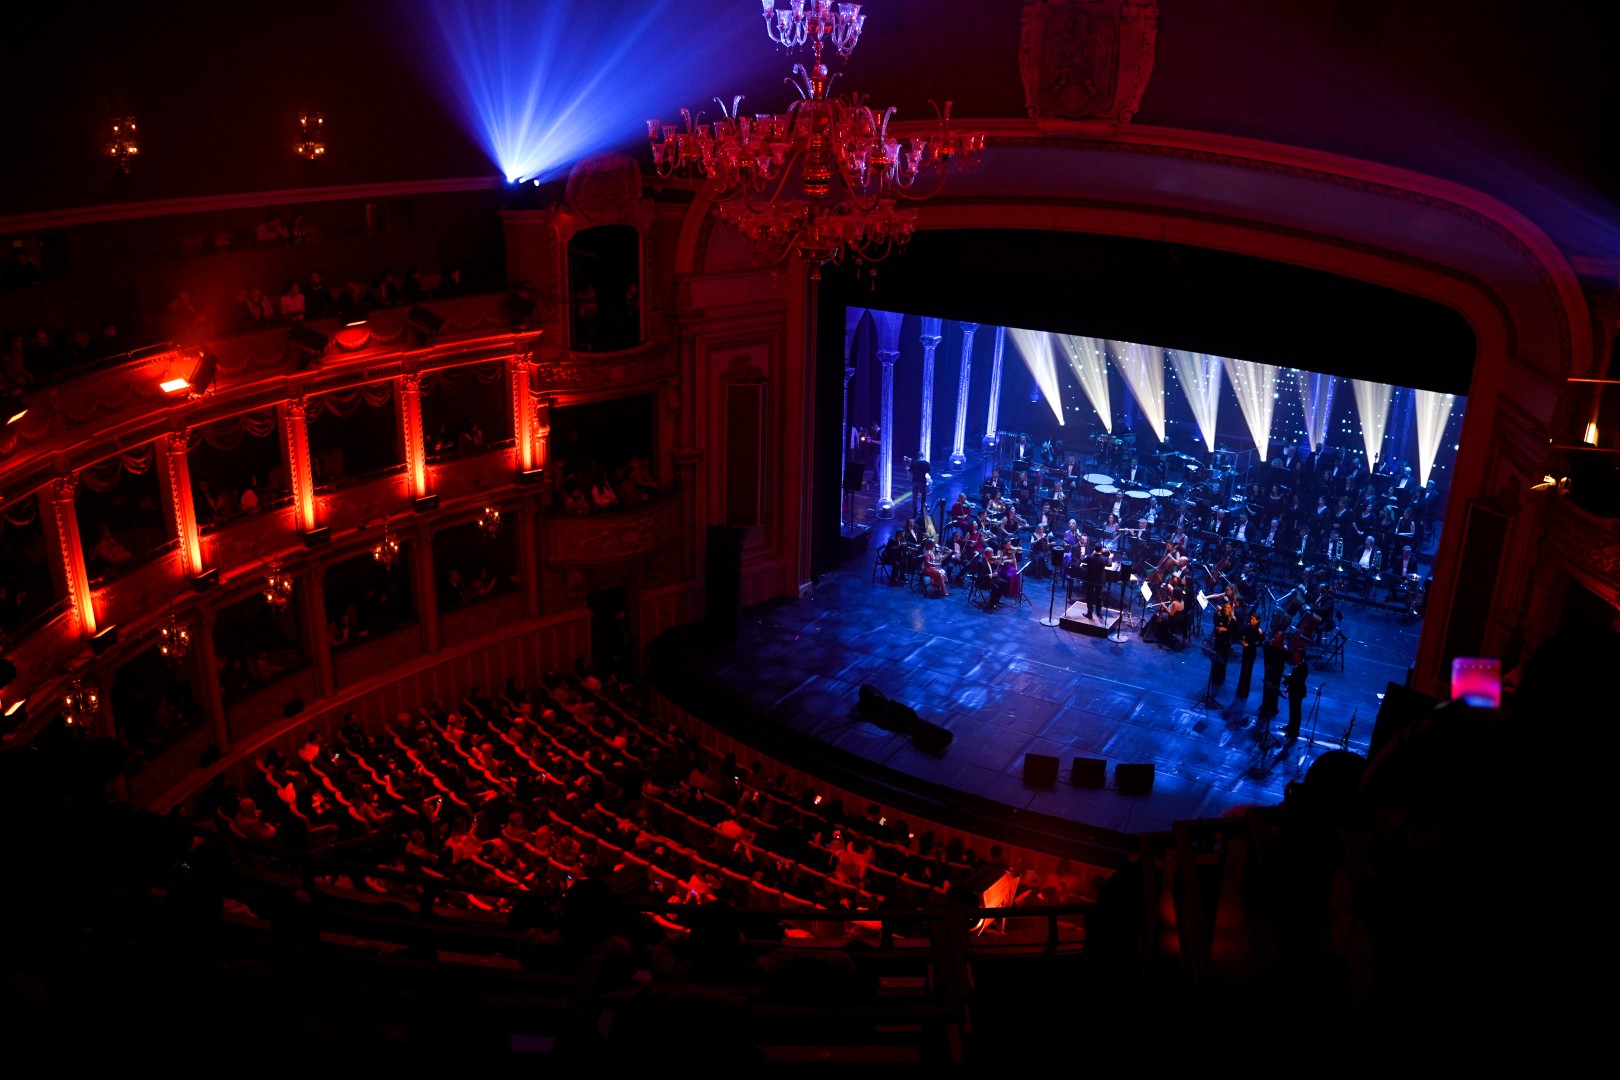 Andra at Opera Națională București in Bucharest on December 5, 2022 (d3a813f083)